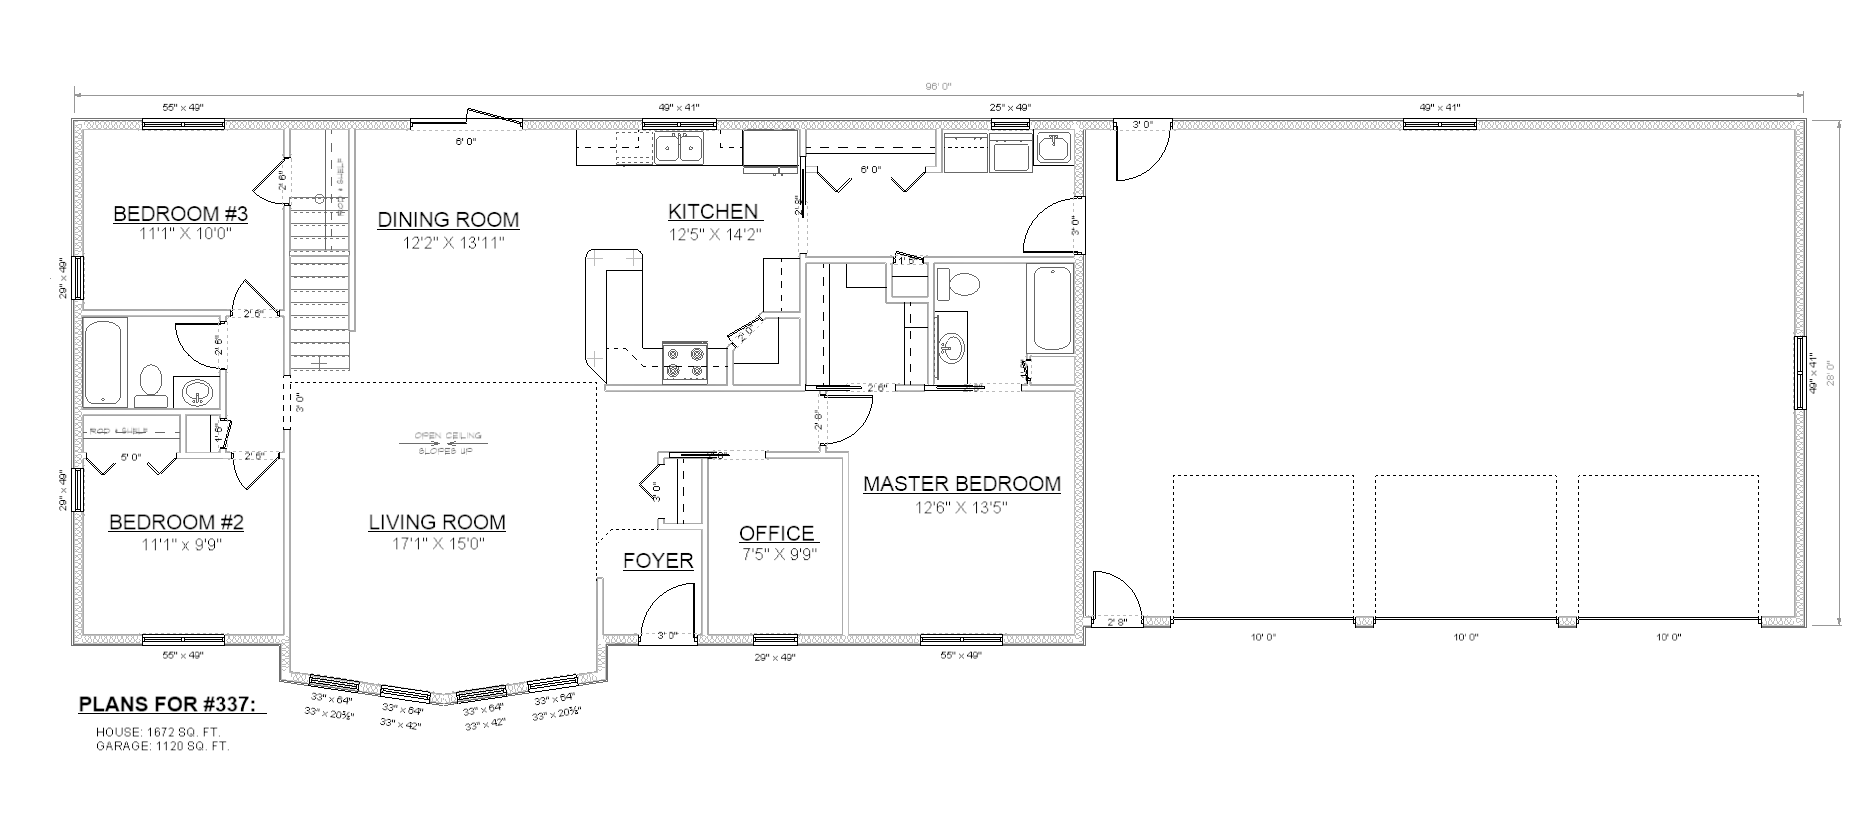 Penner Homes Floor Plan Id: 337